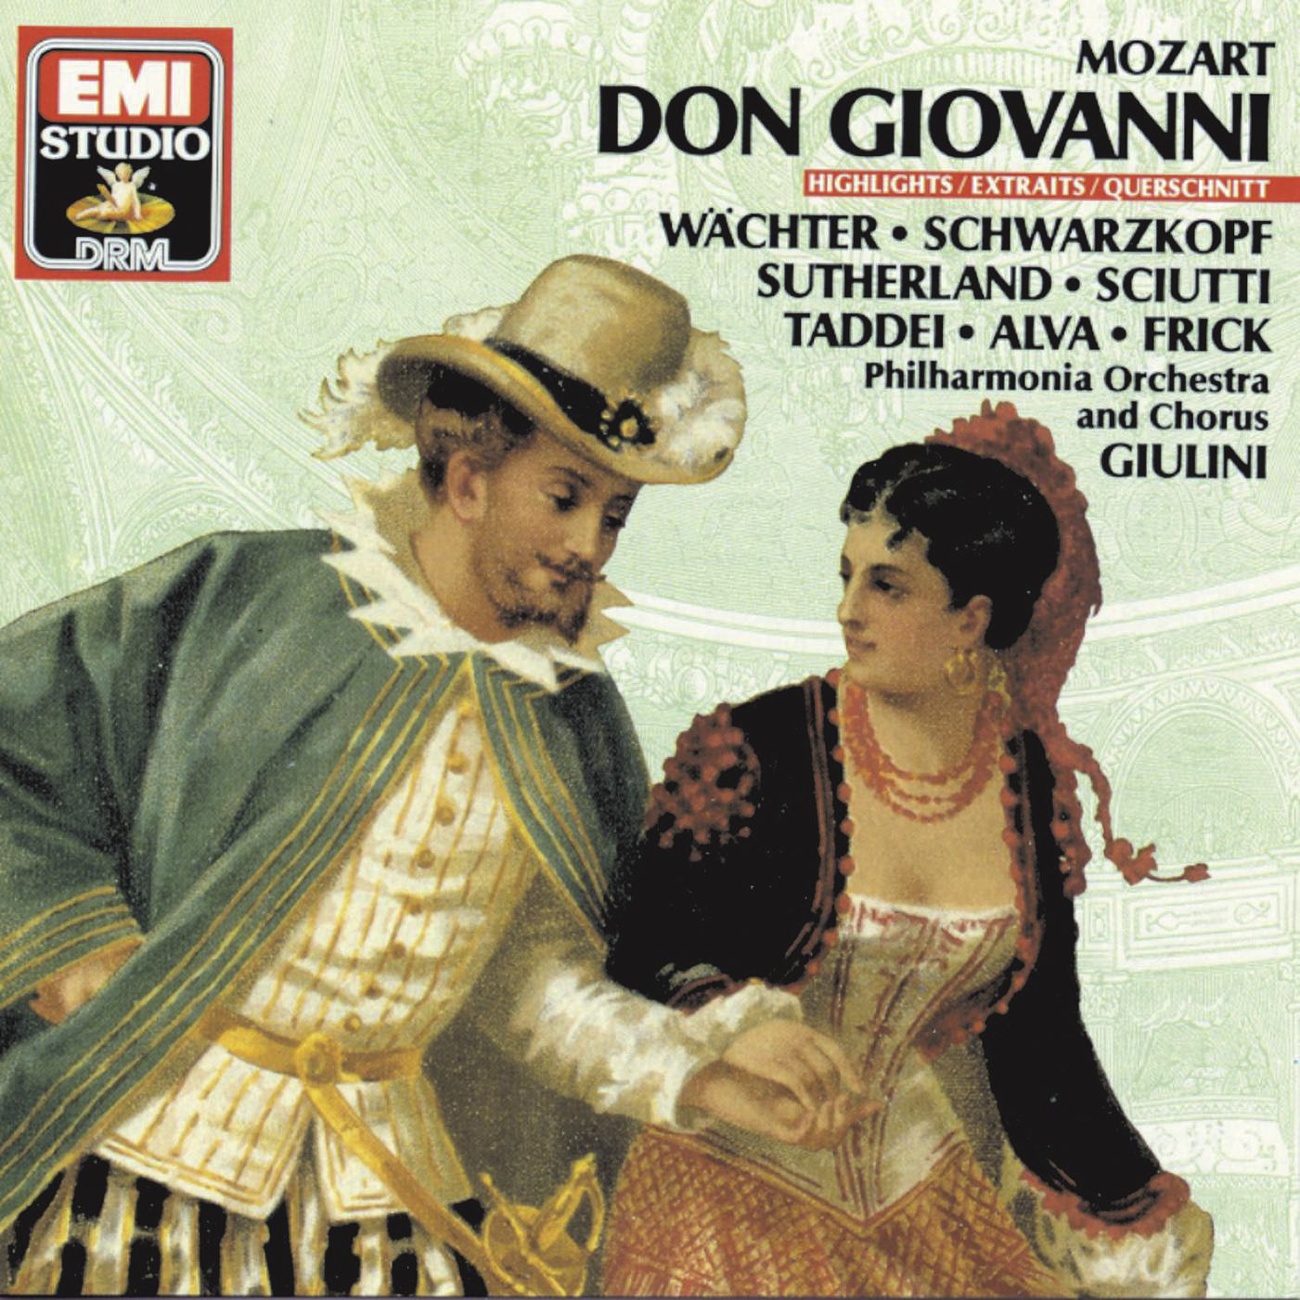 Don Giovanni (1987 Digital Remaster), Act 1: Tra quest arbon celata (Don Giovanni, Zerlina, Masetto, Don Ottavio, Donna Anna, Donna Elvira, Leporello)